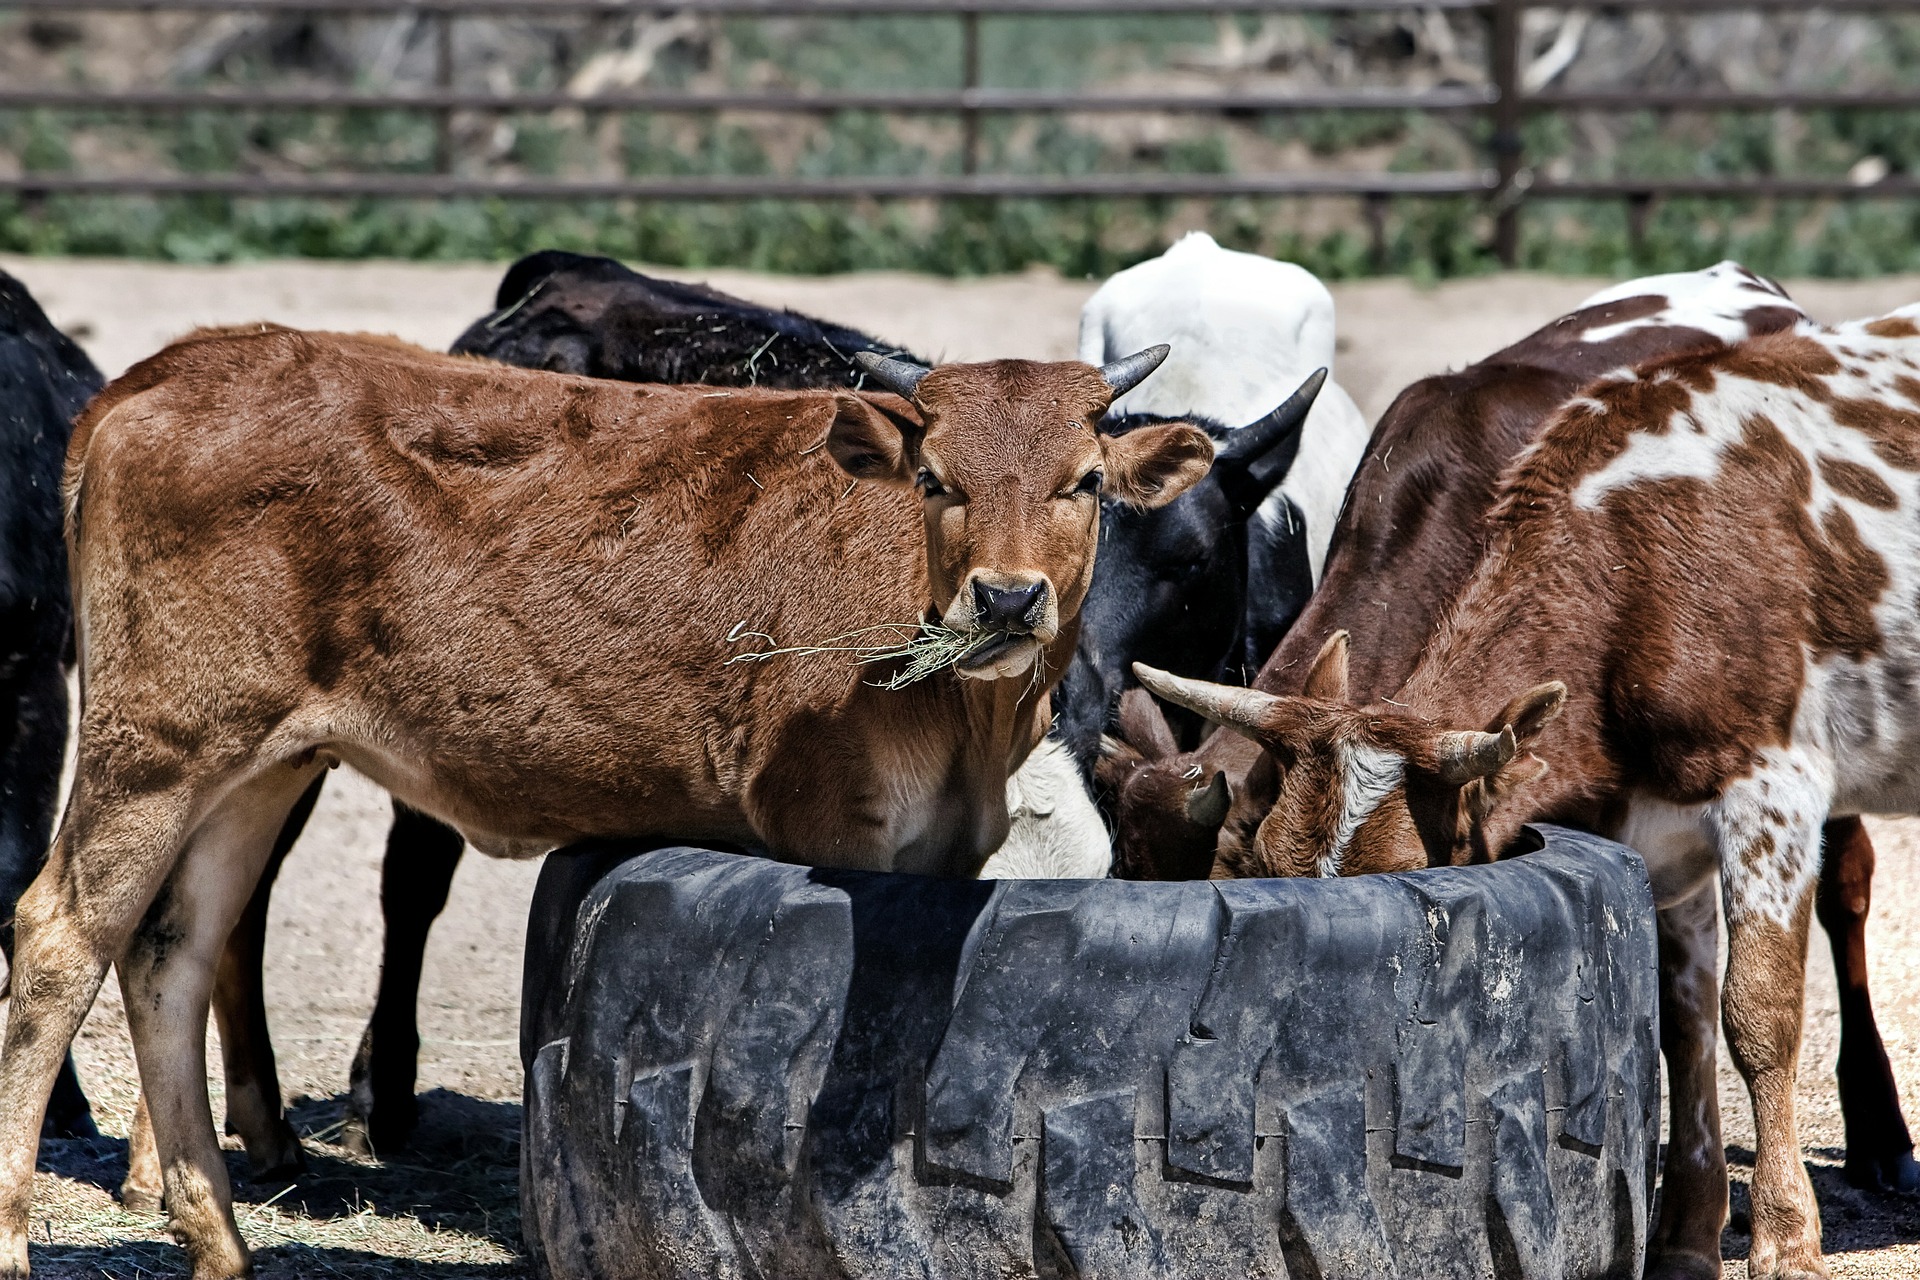 Cows at a cattle farm